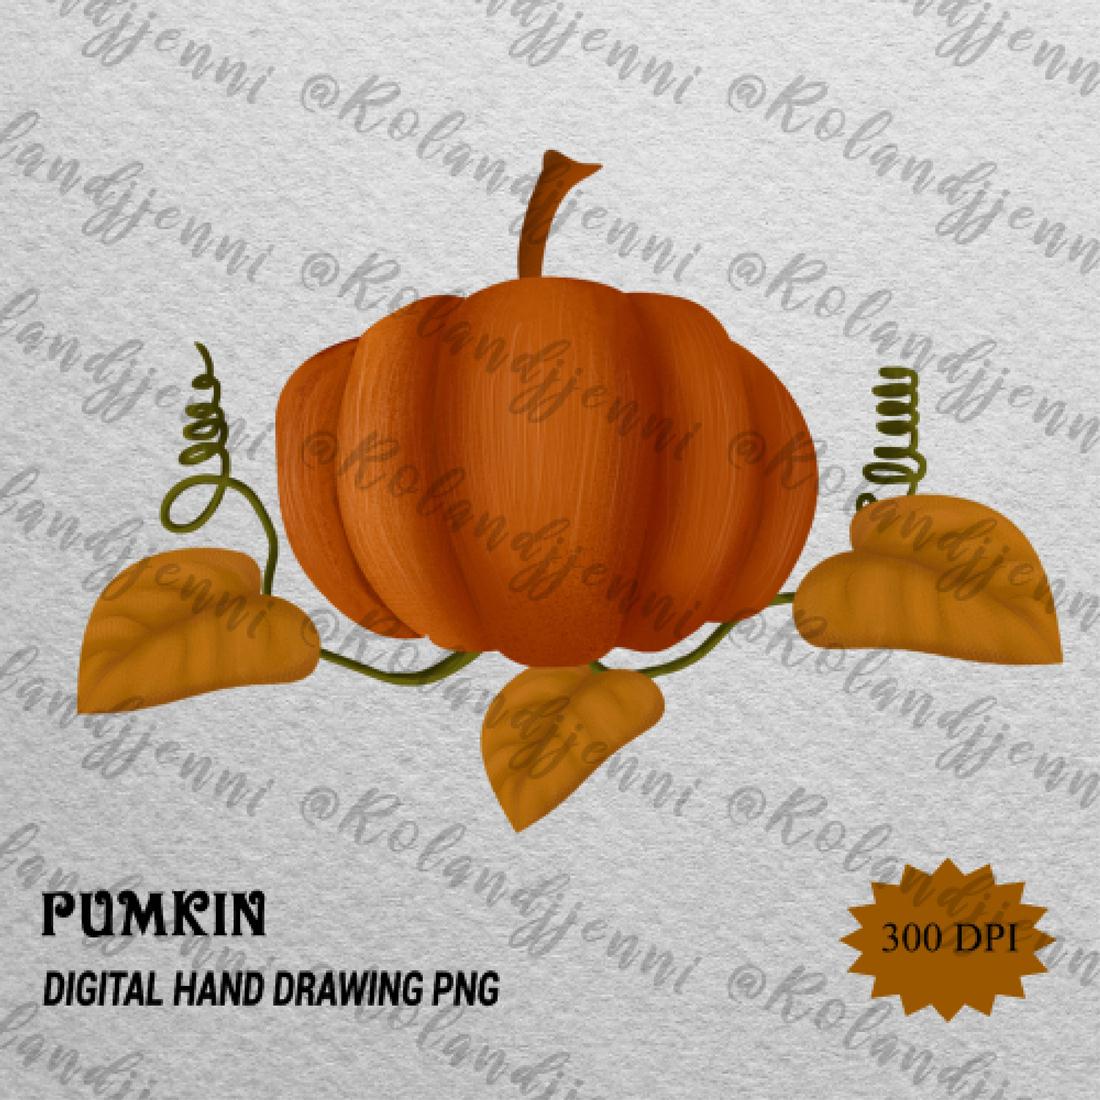 Halloween Pumpkin Hand Drawing PNG PSD pinterest image.